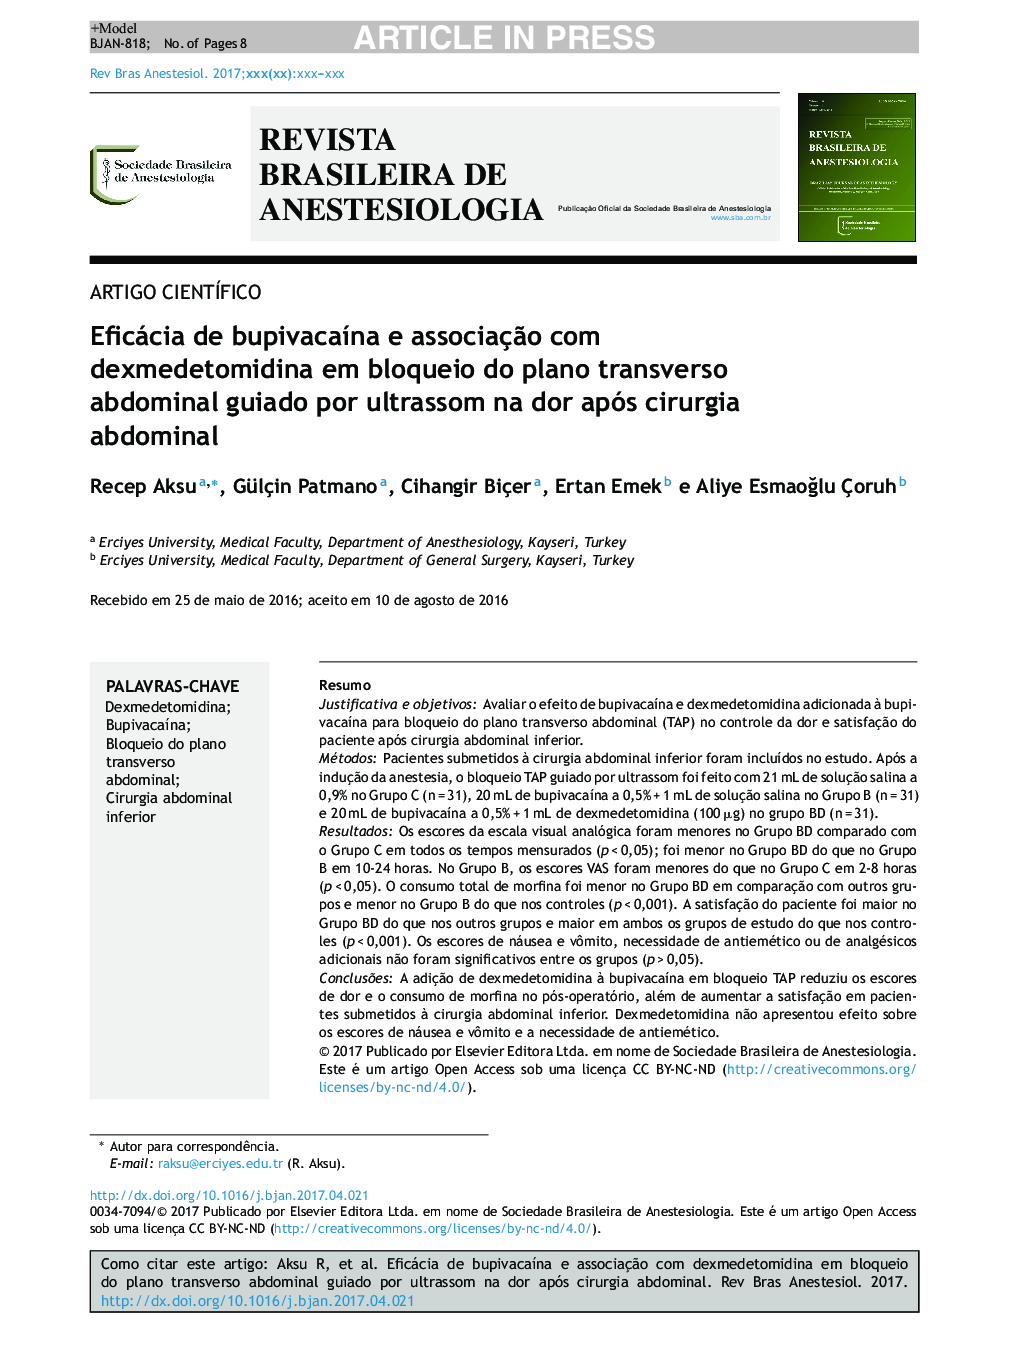 Eficácia de bupivacaÃ­na e associaçÃ£o com dexmedetomidina em bloqueio do plano transverso abdominal guiado por ultrassom na dor após cirurgia abdominal